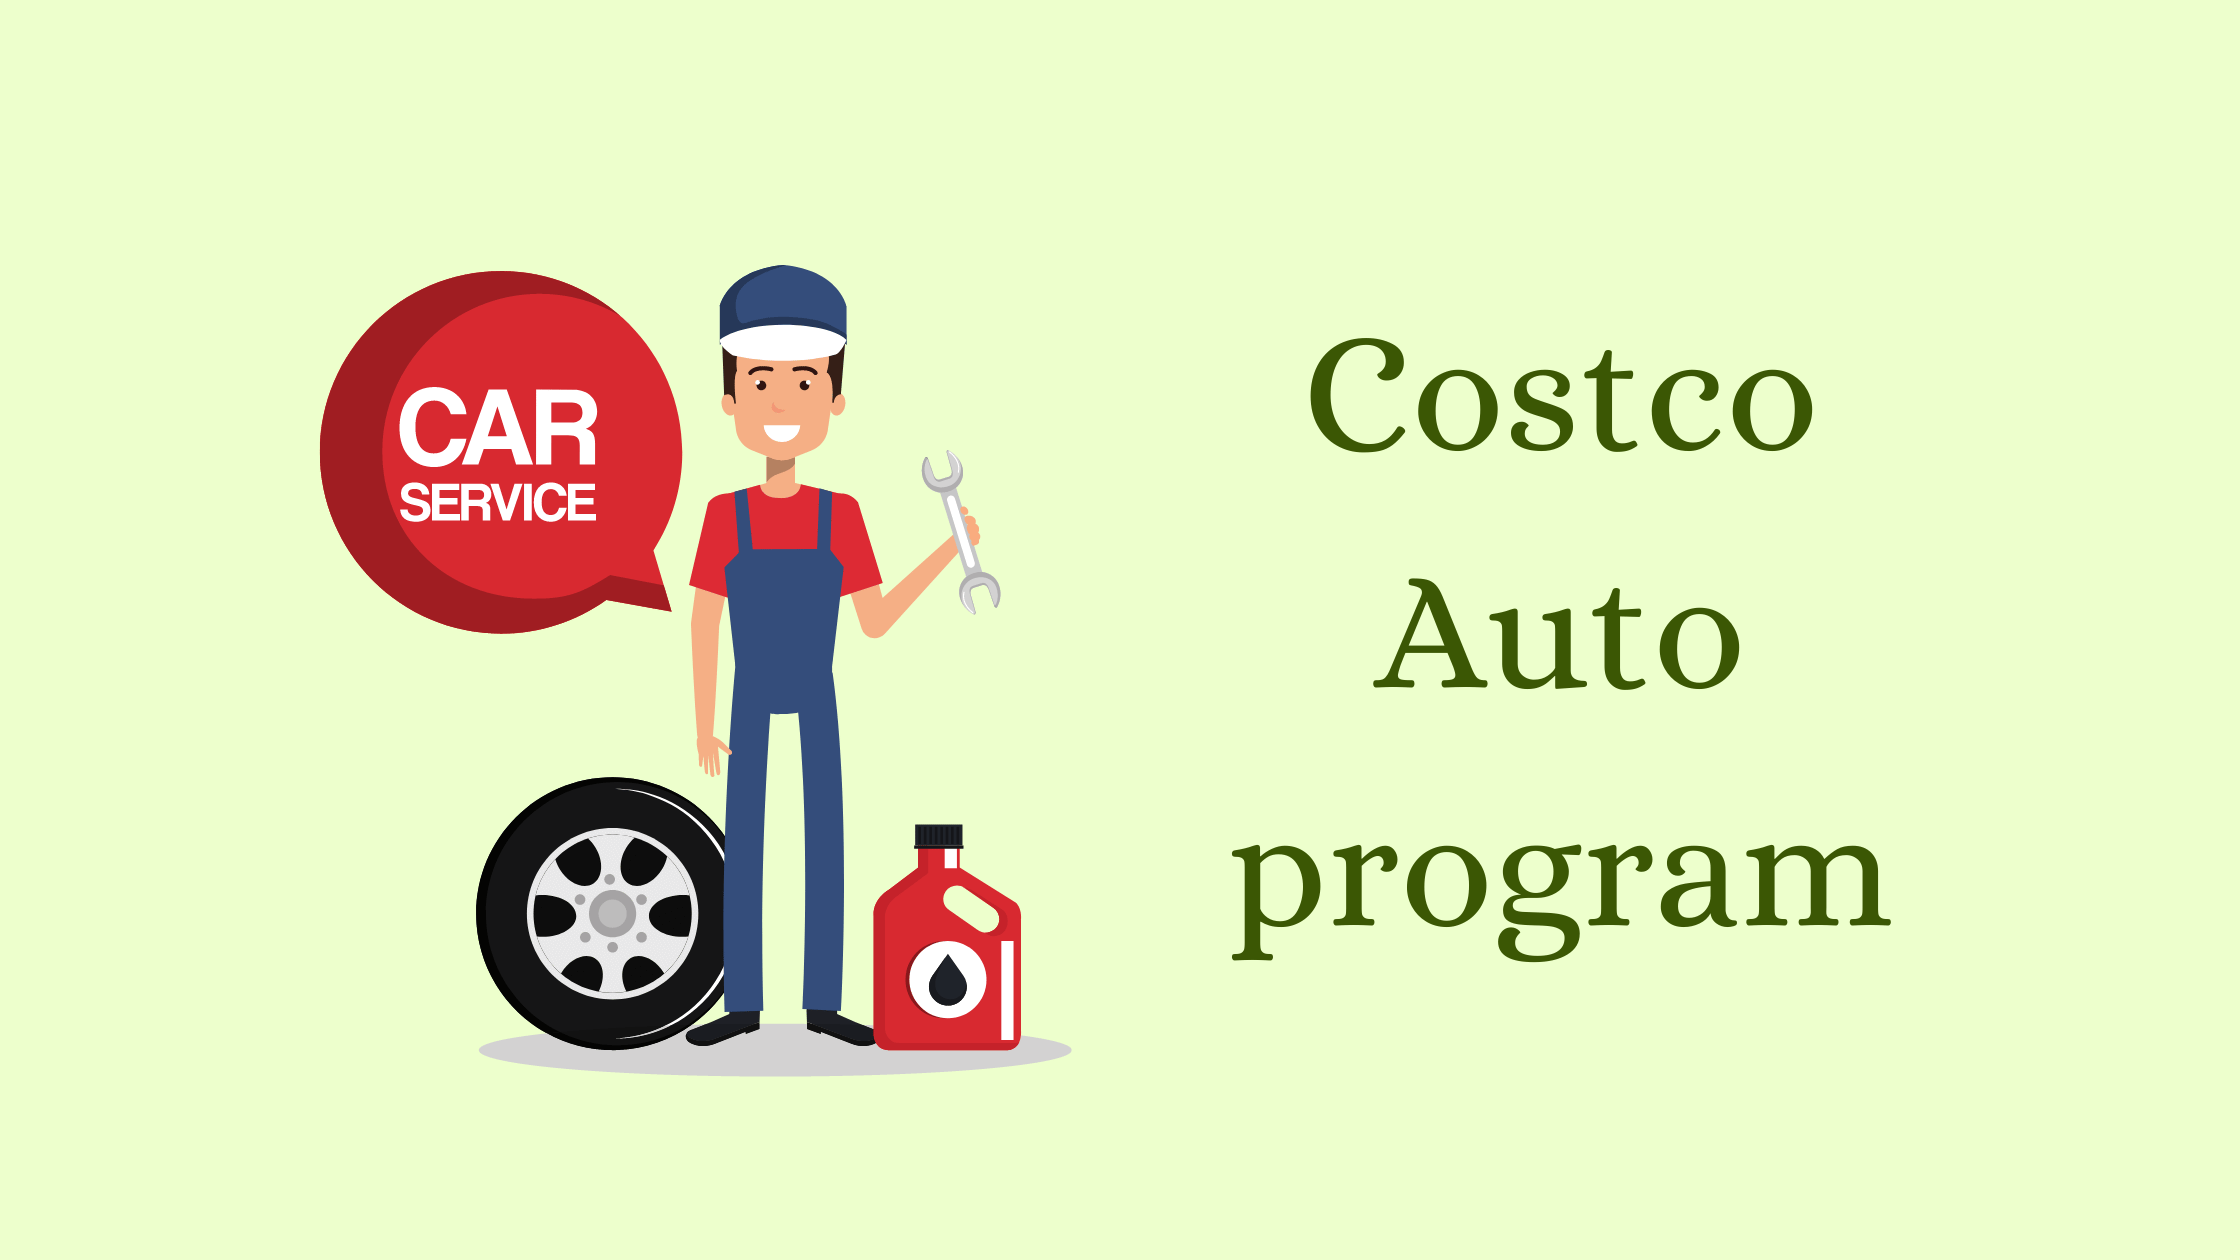 Costco Automotive Services